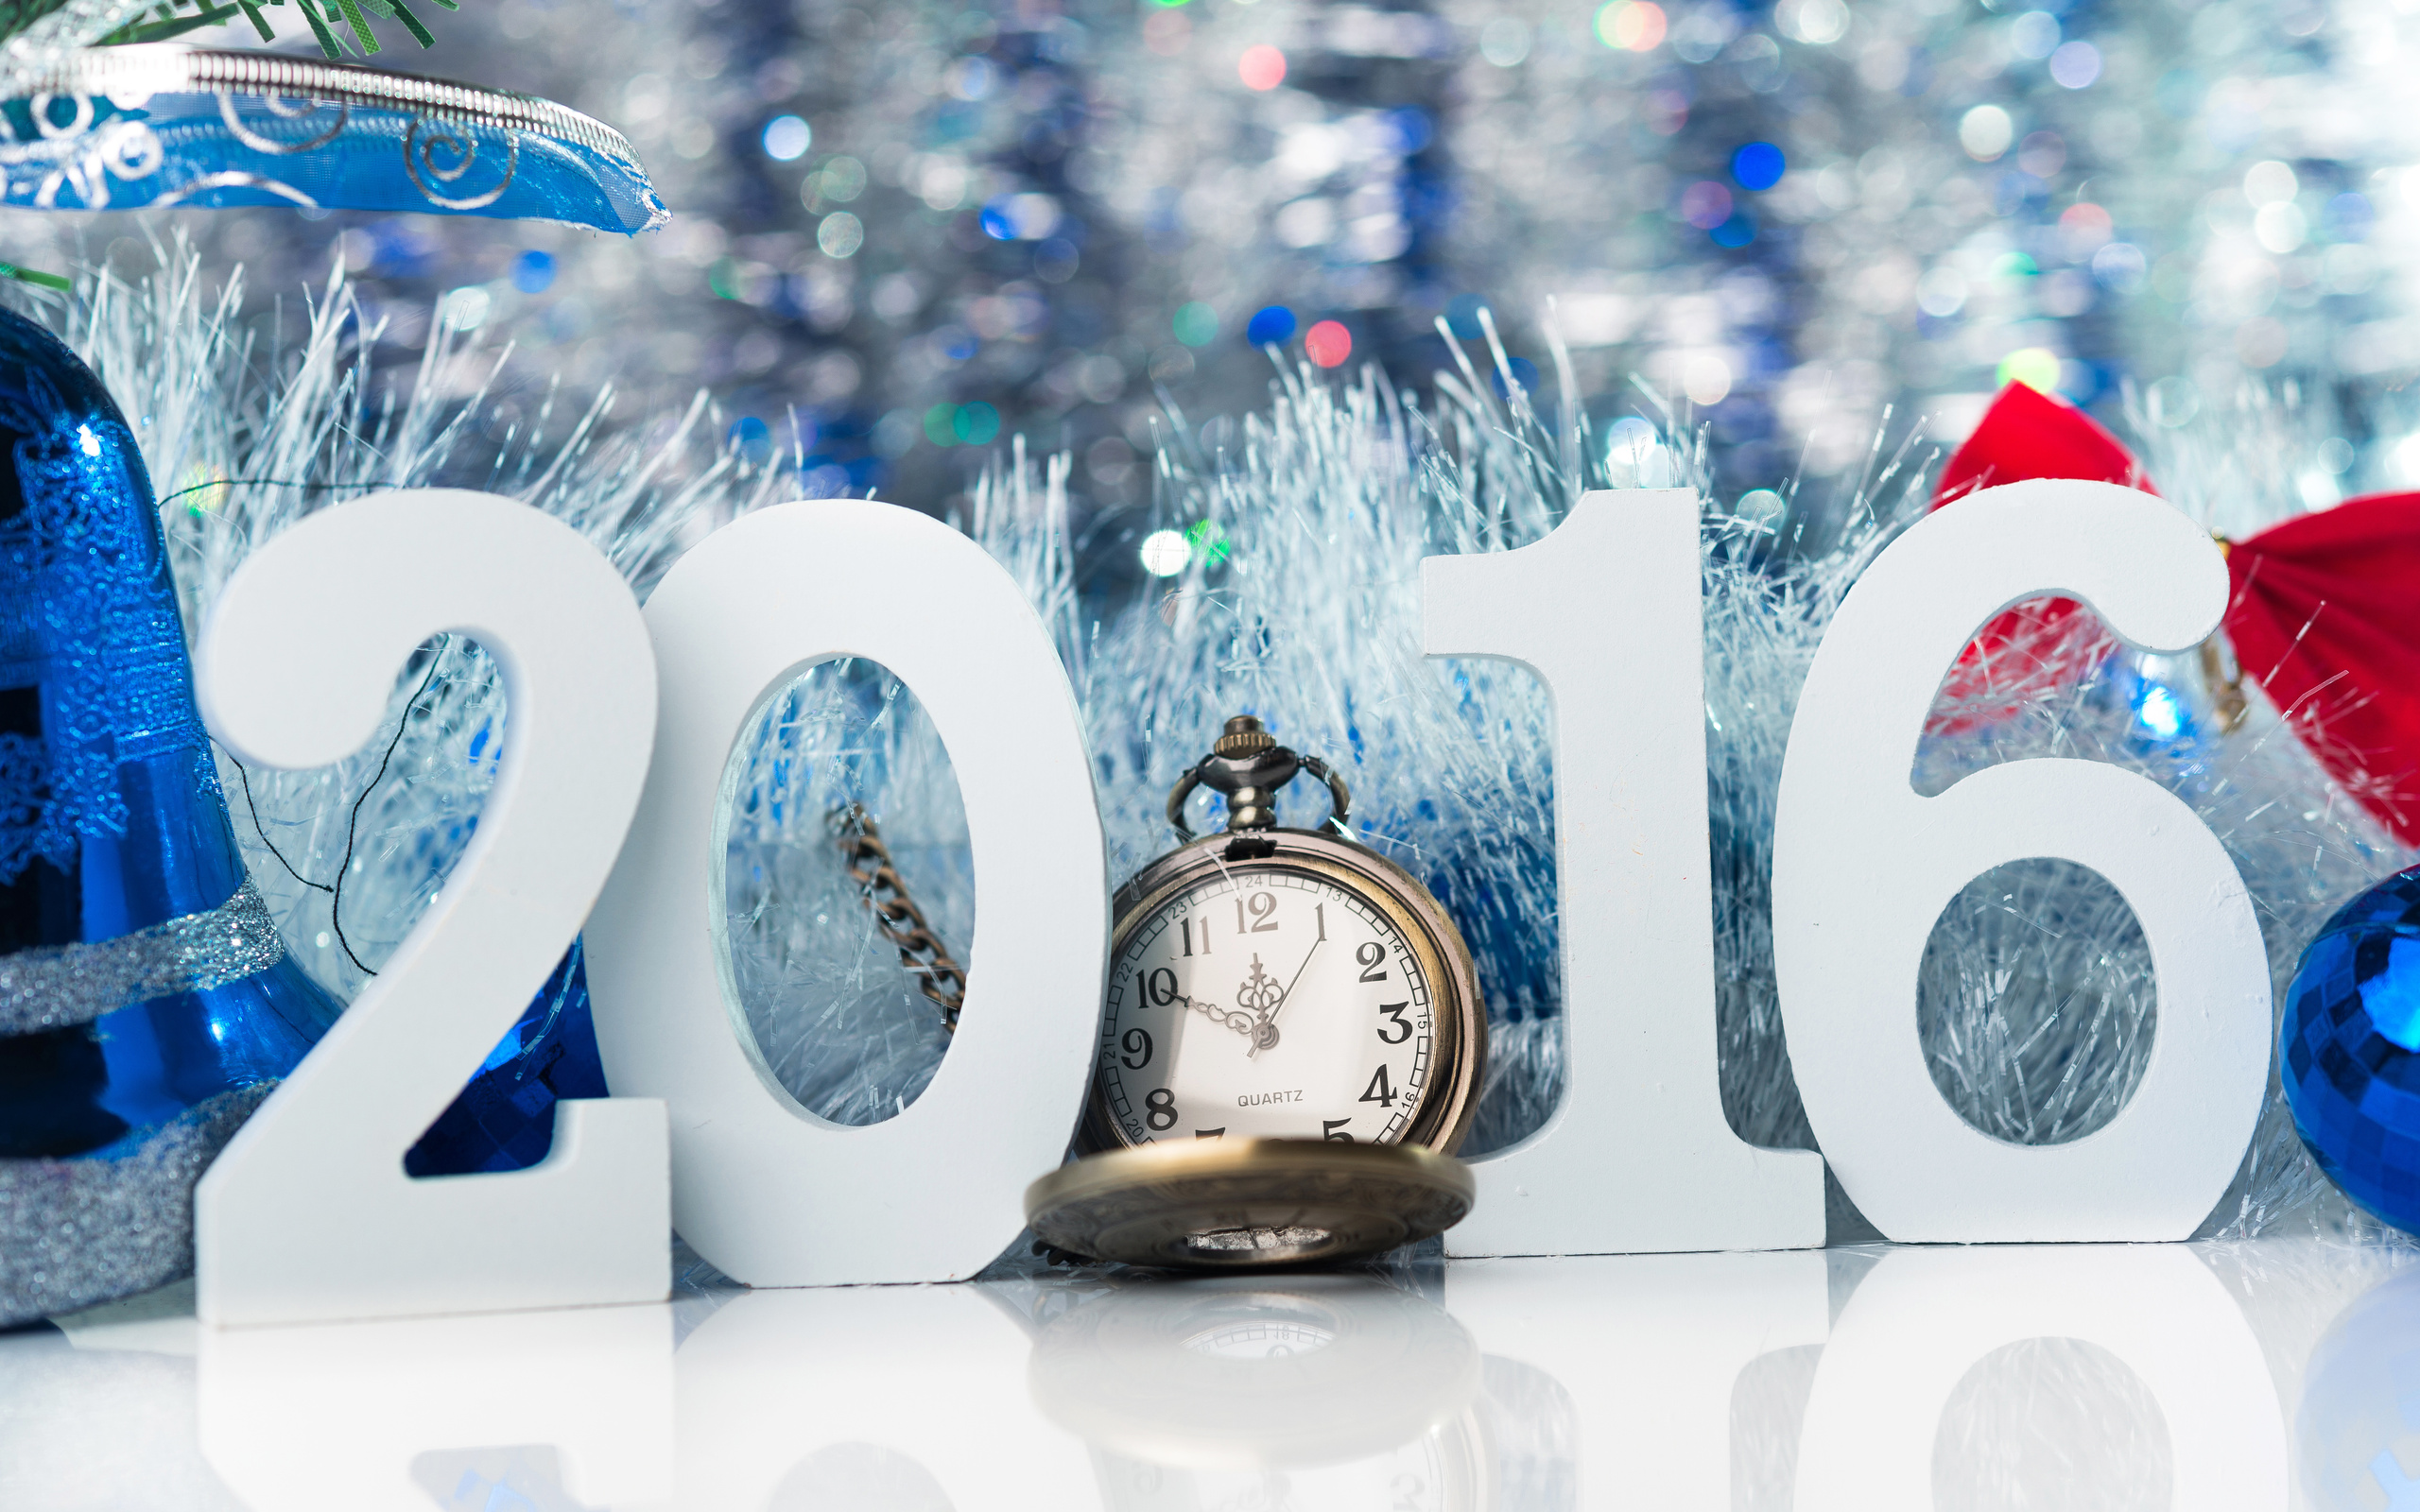 Скачать обои бесплатно Праздничные, Новый Год 2016 картинка на рабочий стол ПК